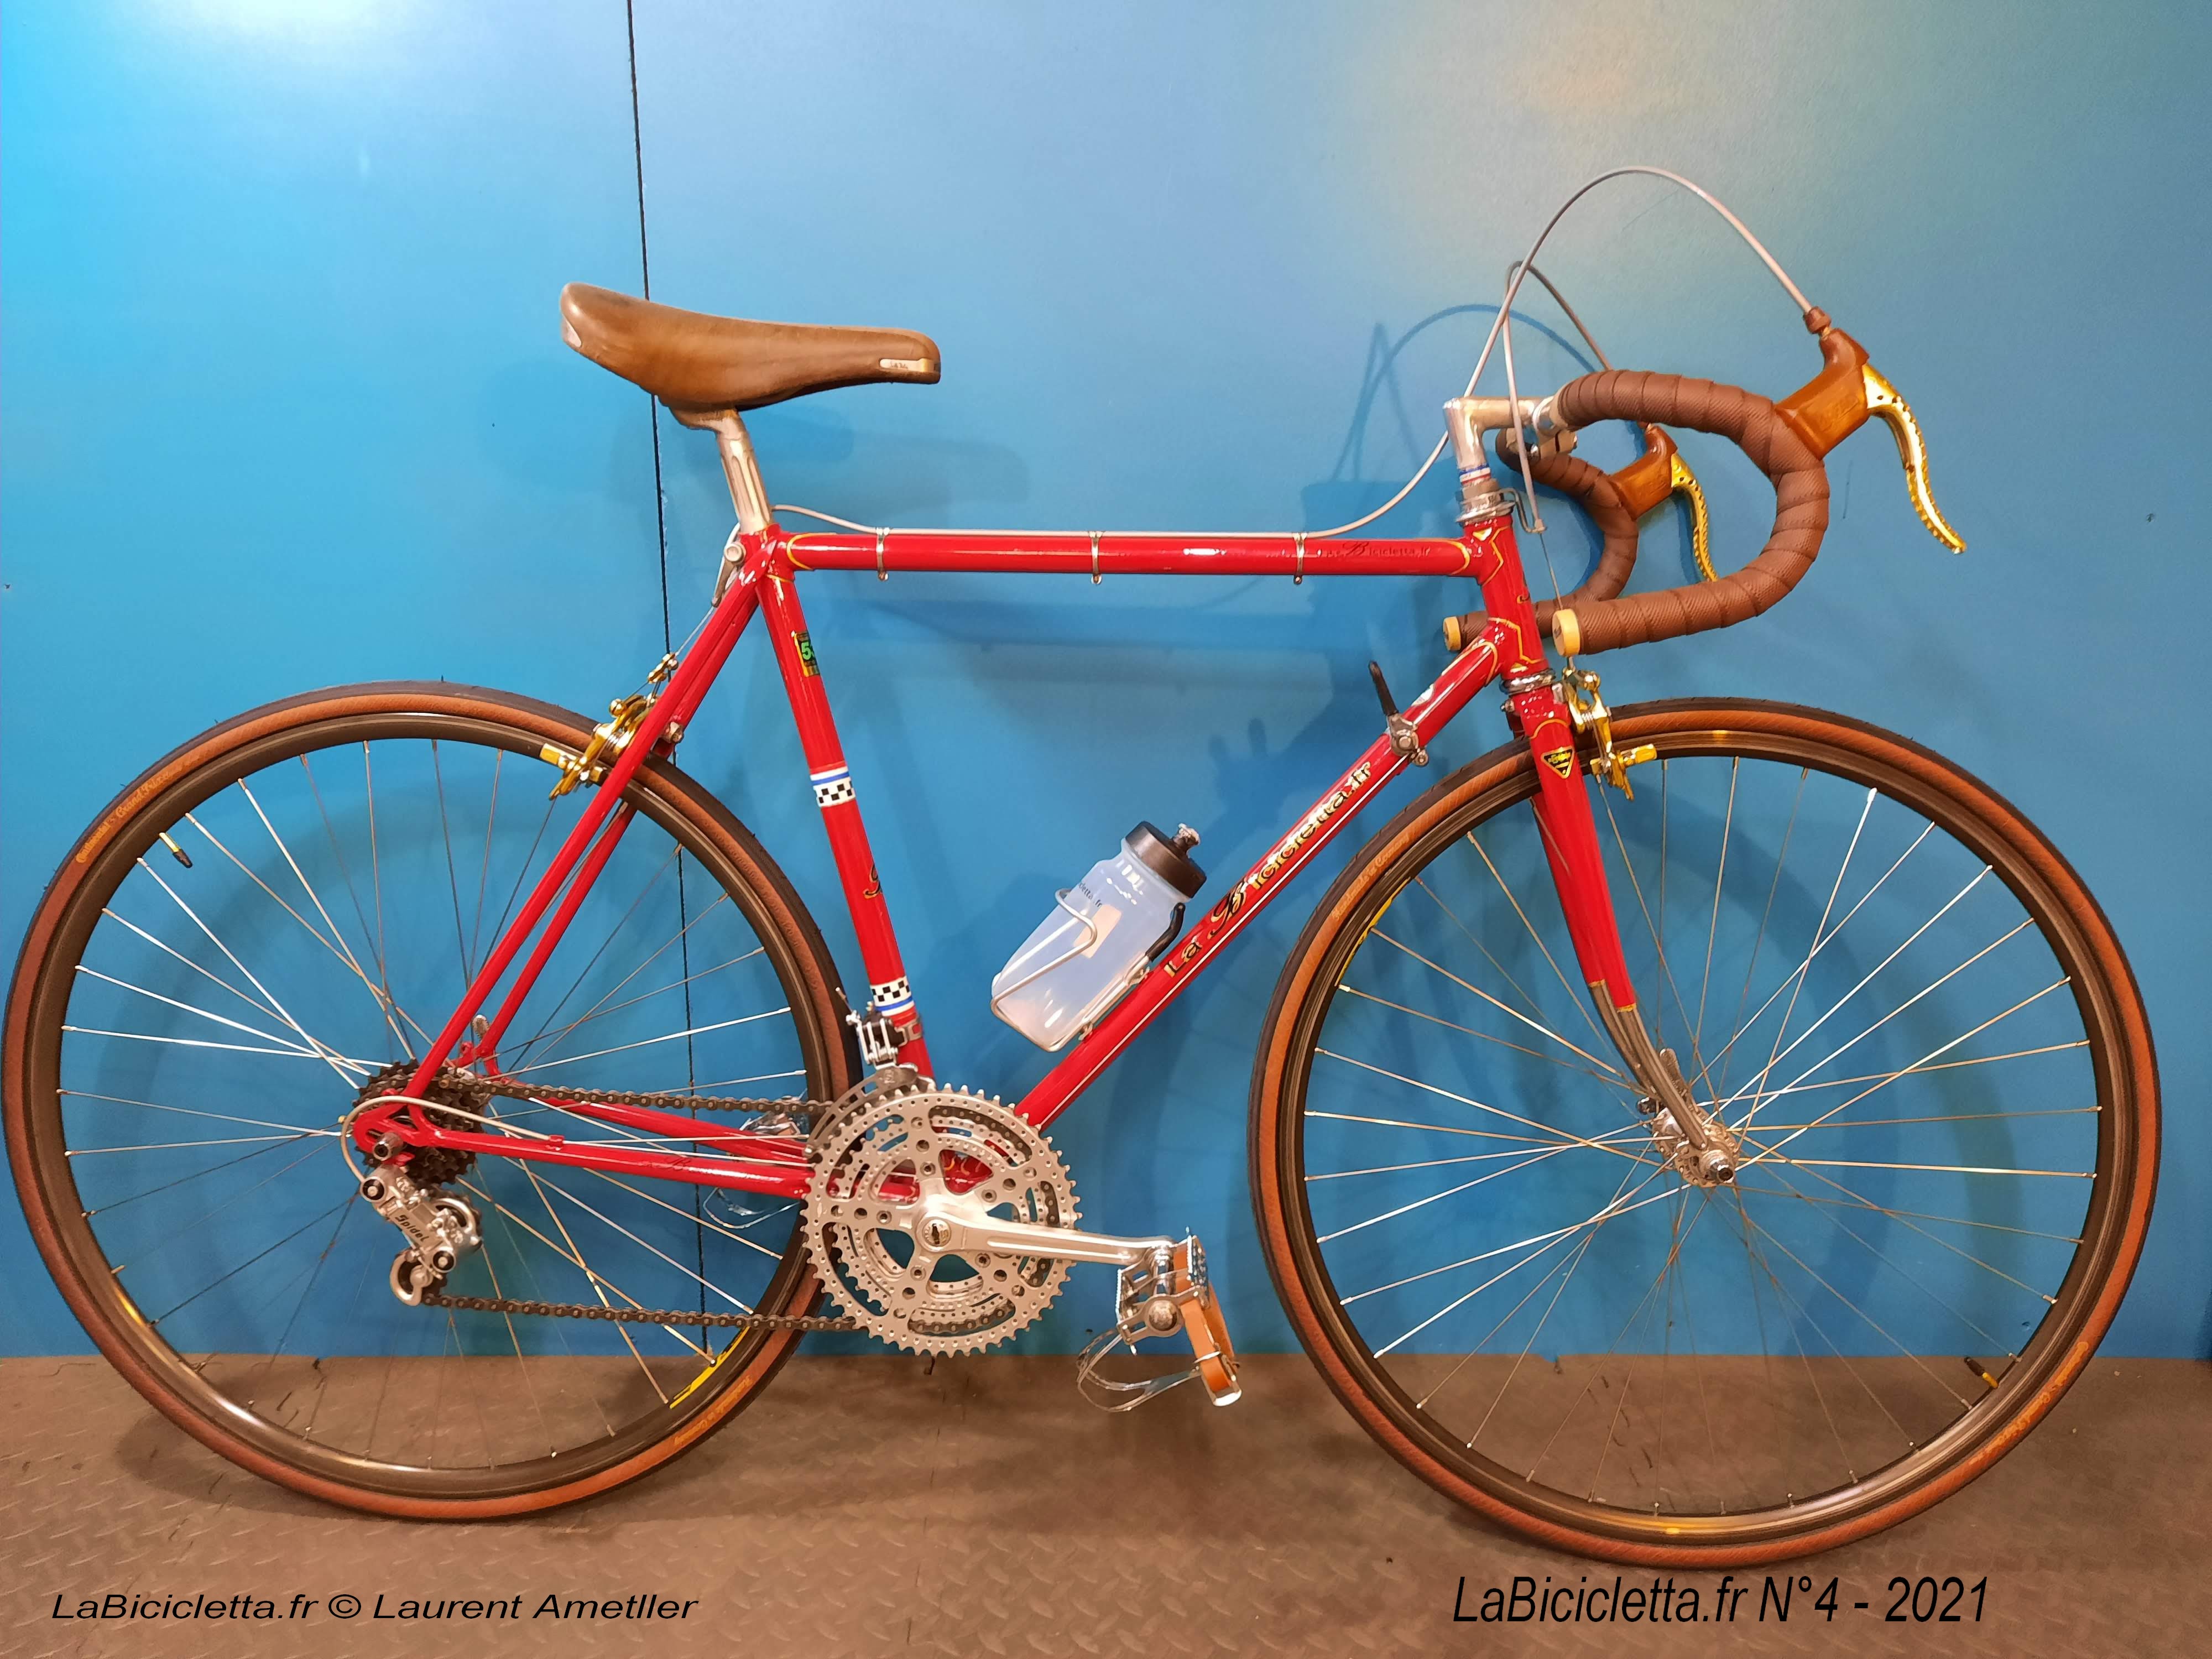 LaBicicletta Bike 4 (2021)